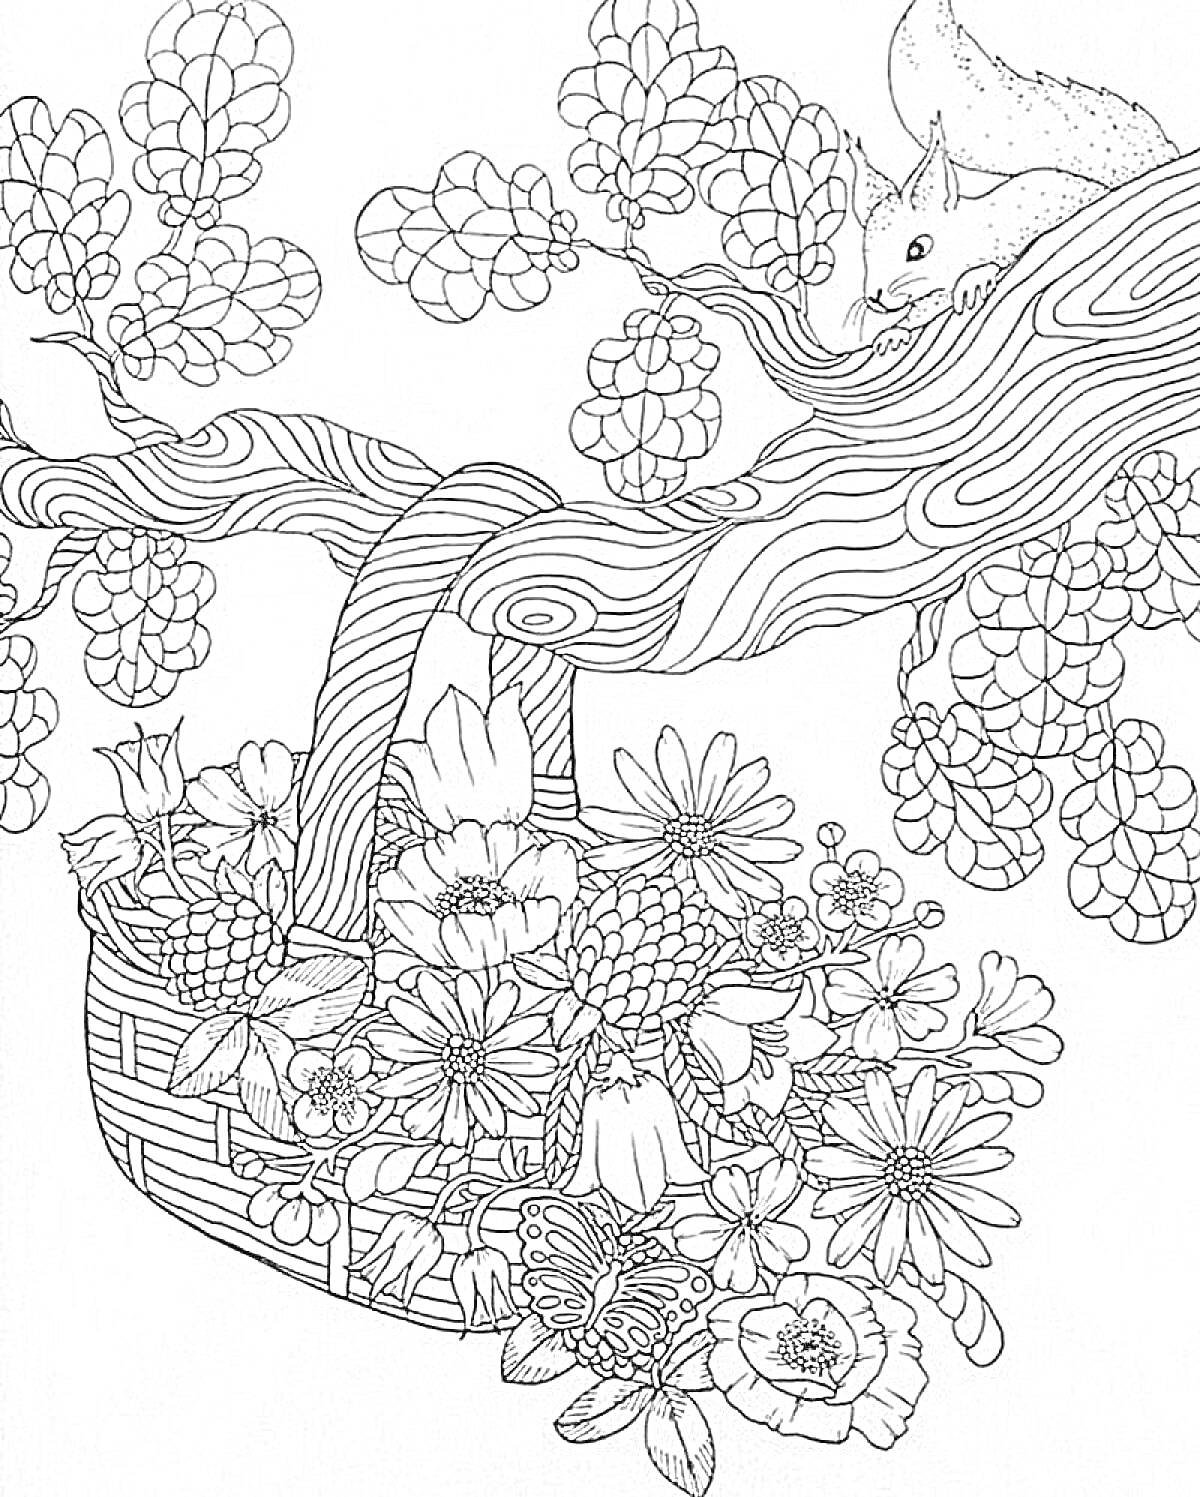 РаскраскаБелка и букет цветов в корзине на ветке дерева